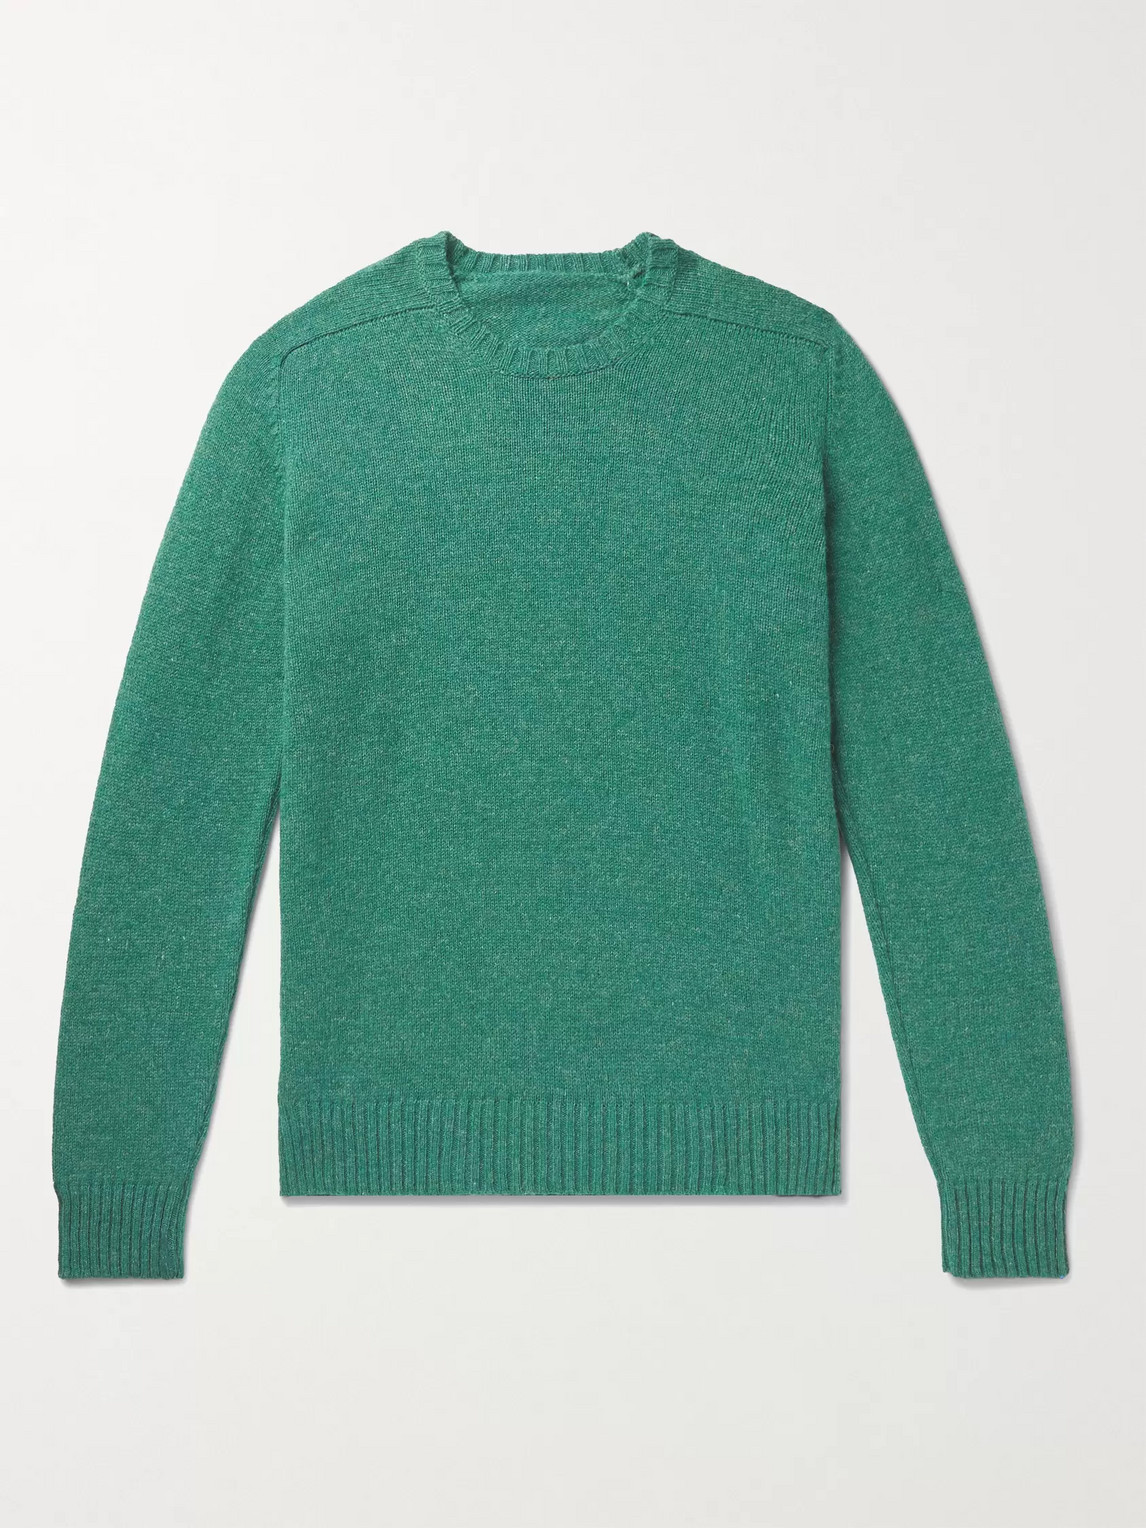 Anderson & Sheppard Shetland Wool Sweater In Green